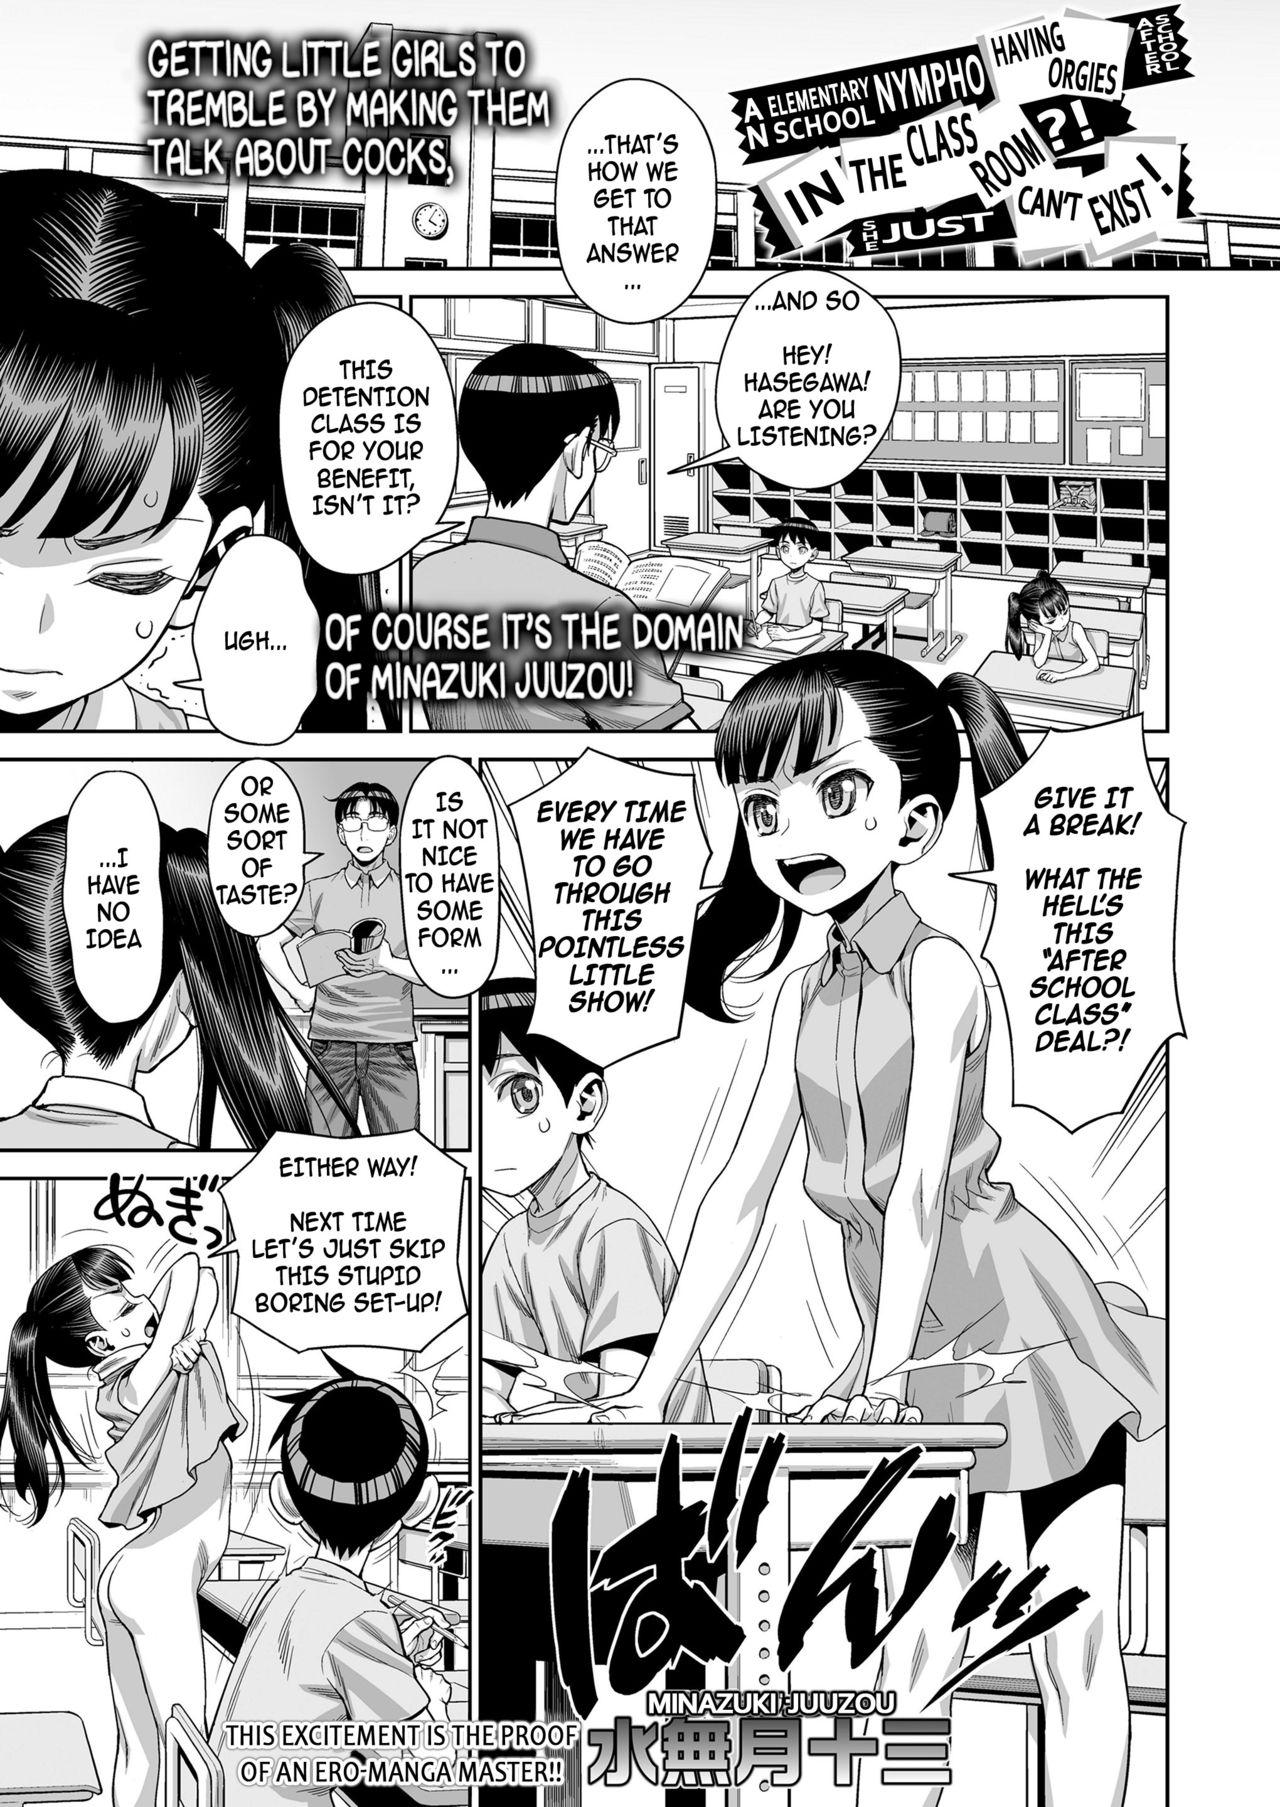 Houkago no Kyoushitsu de Rankou Suru Inran JS nante Iru Hazu ga Nai! | An Elementary School Nympho Having Orgies After School In The Classroom?! She Just Can't Exist! 0